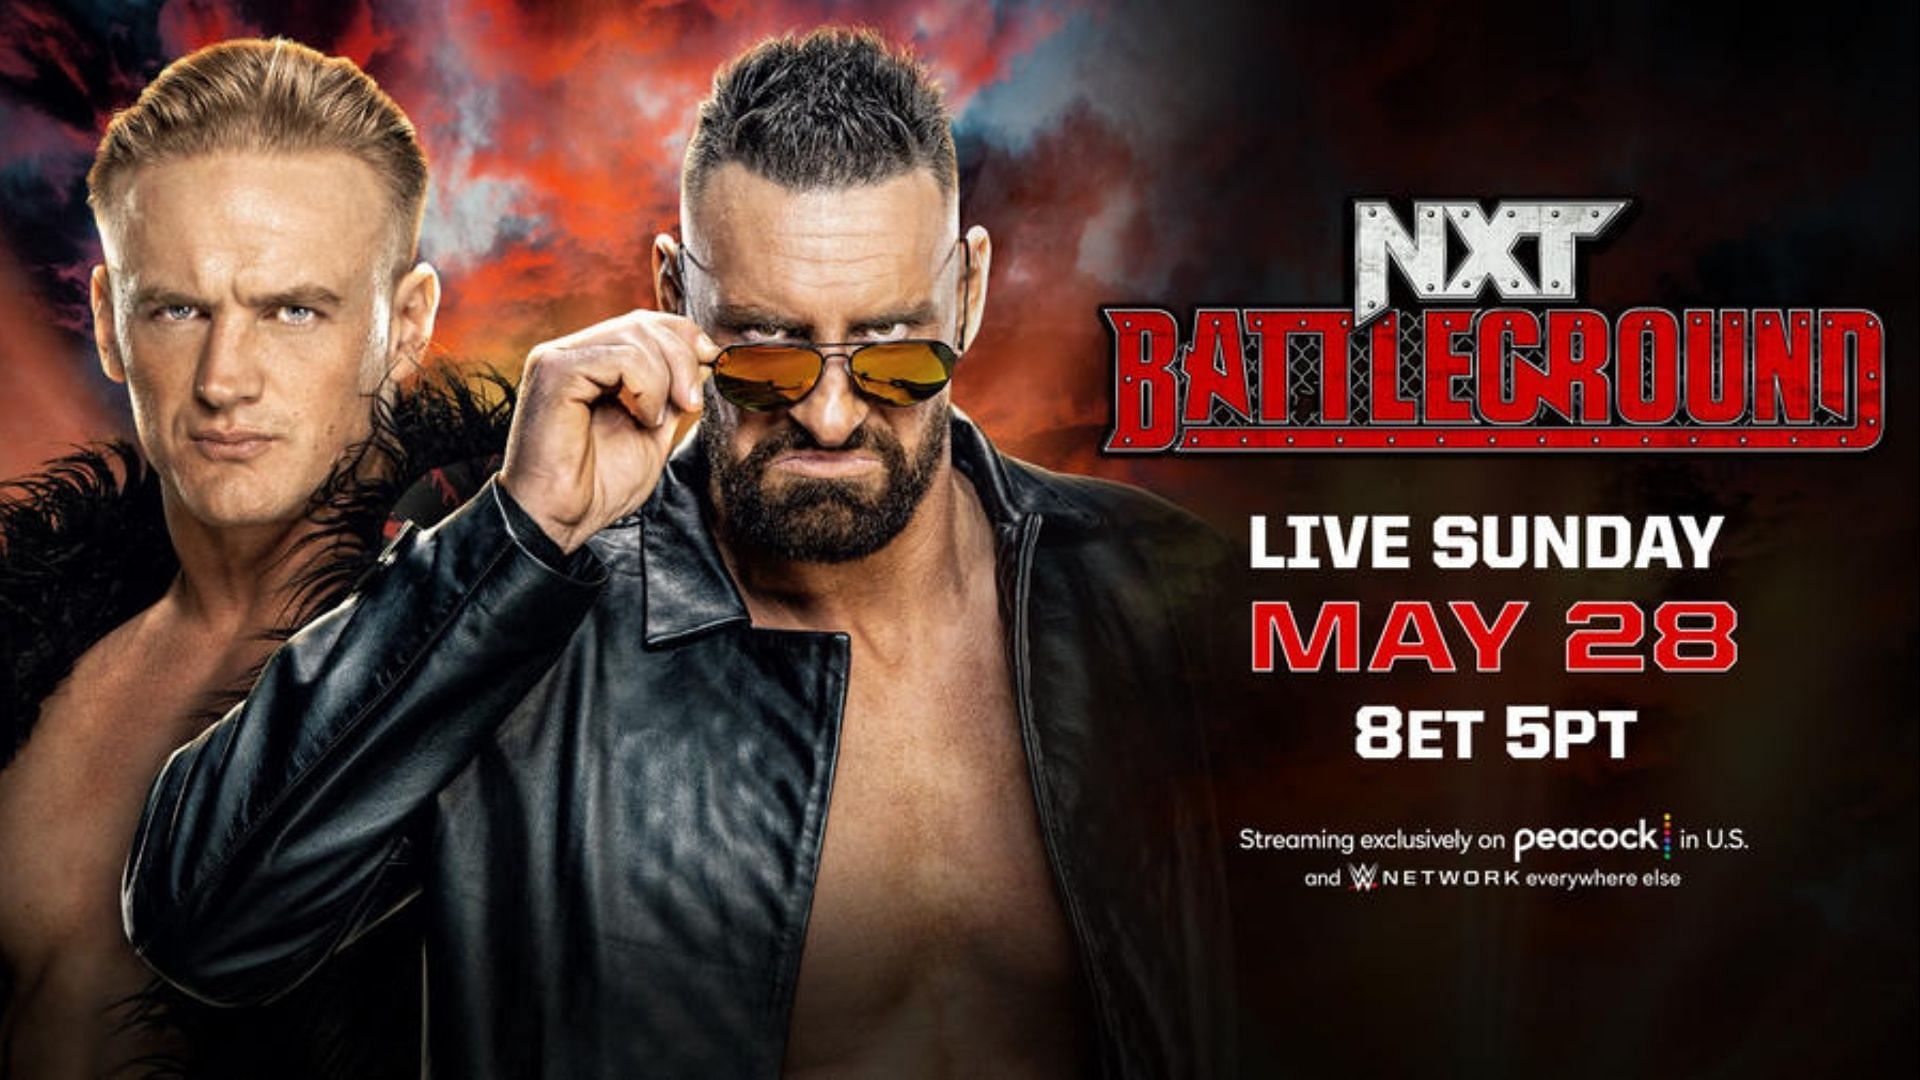 NXT Battleground will feature a Last Man Standing match.